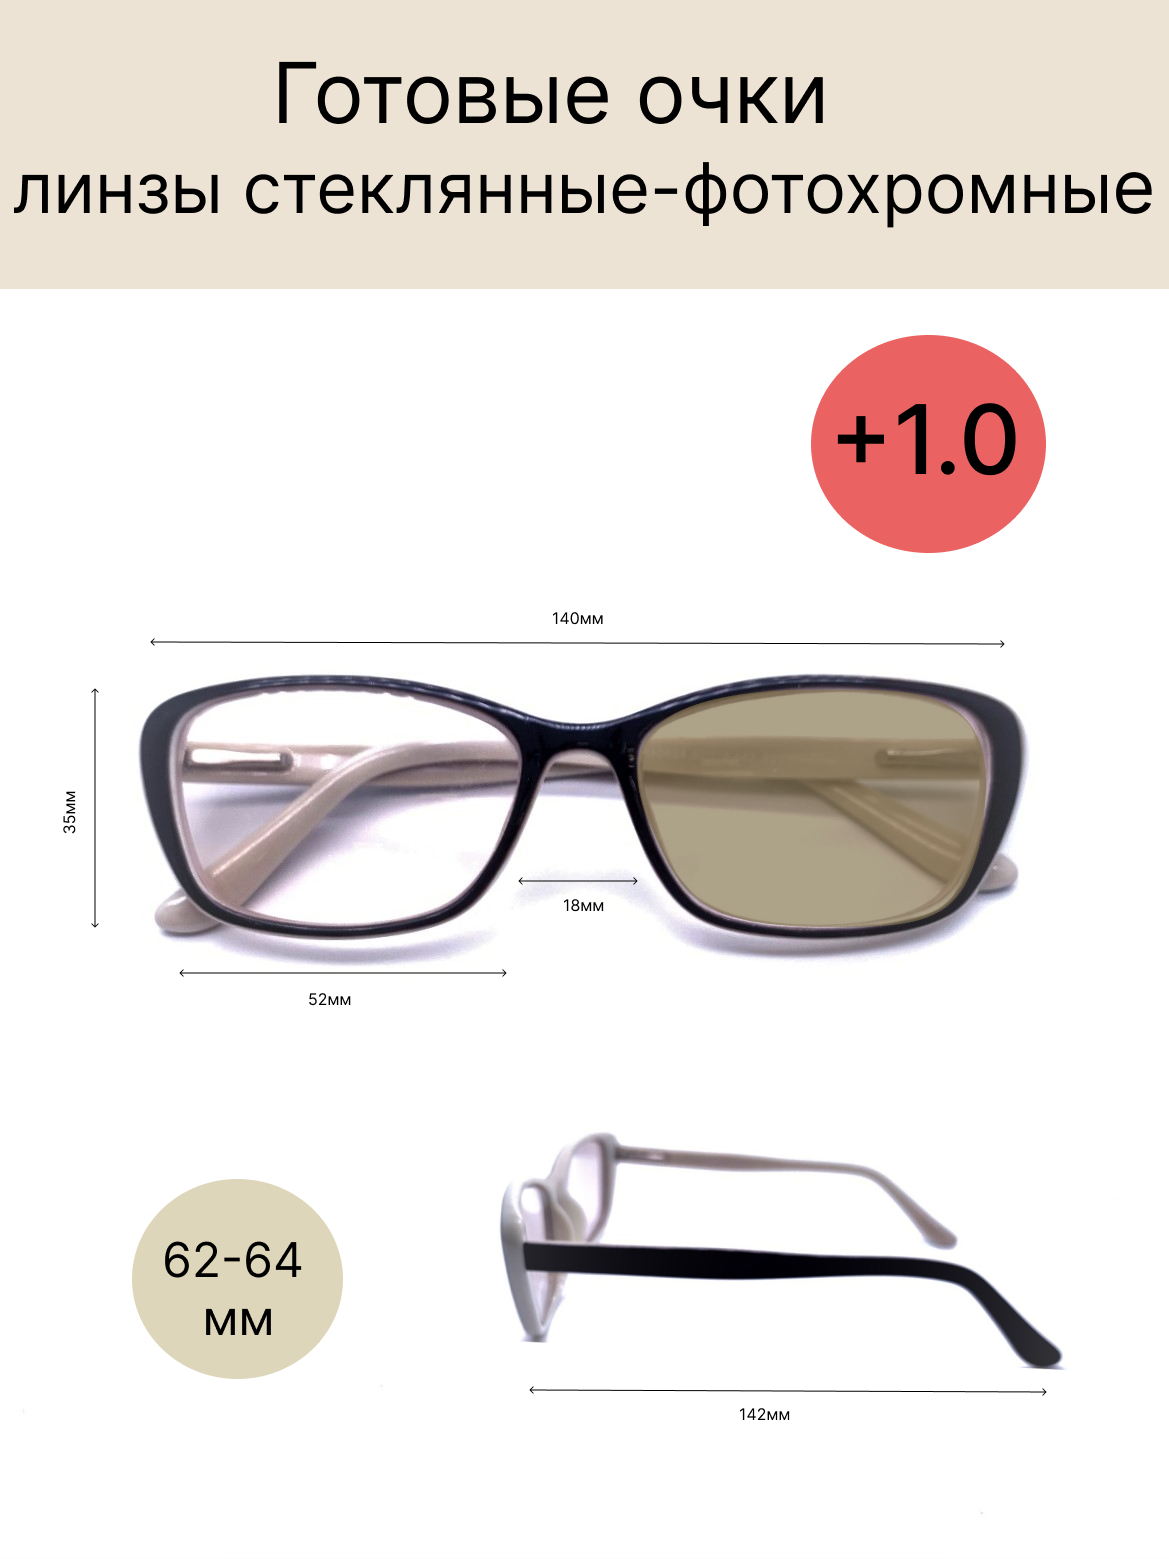 Готовые очки для зрения с диоптриями +1.0 и стеклянными фотохромными линзами